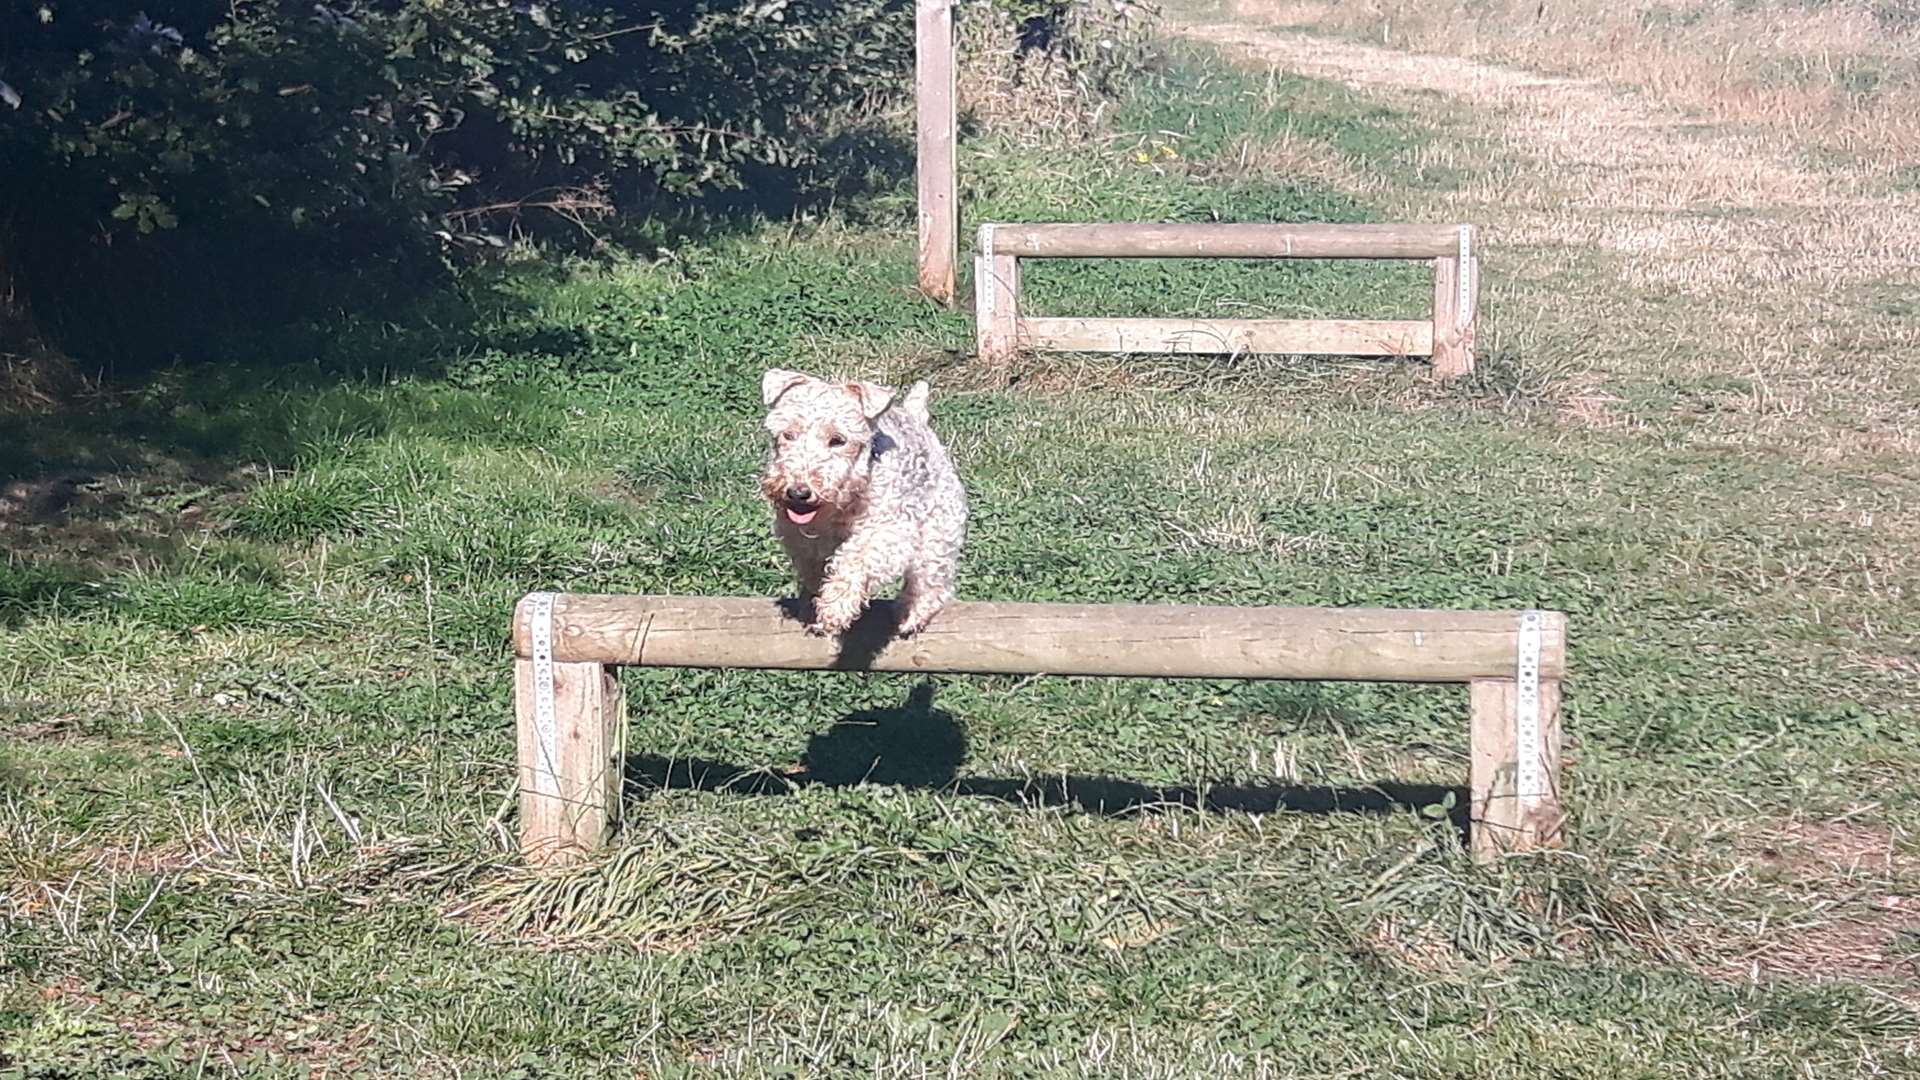 Barley jumping over hurdles at Jeskyn's park